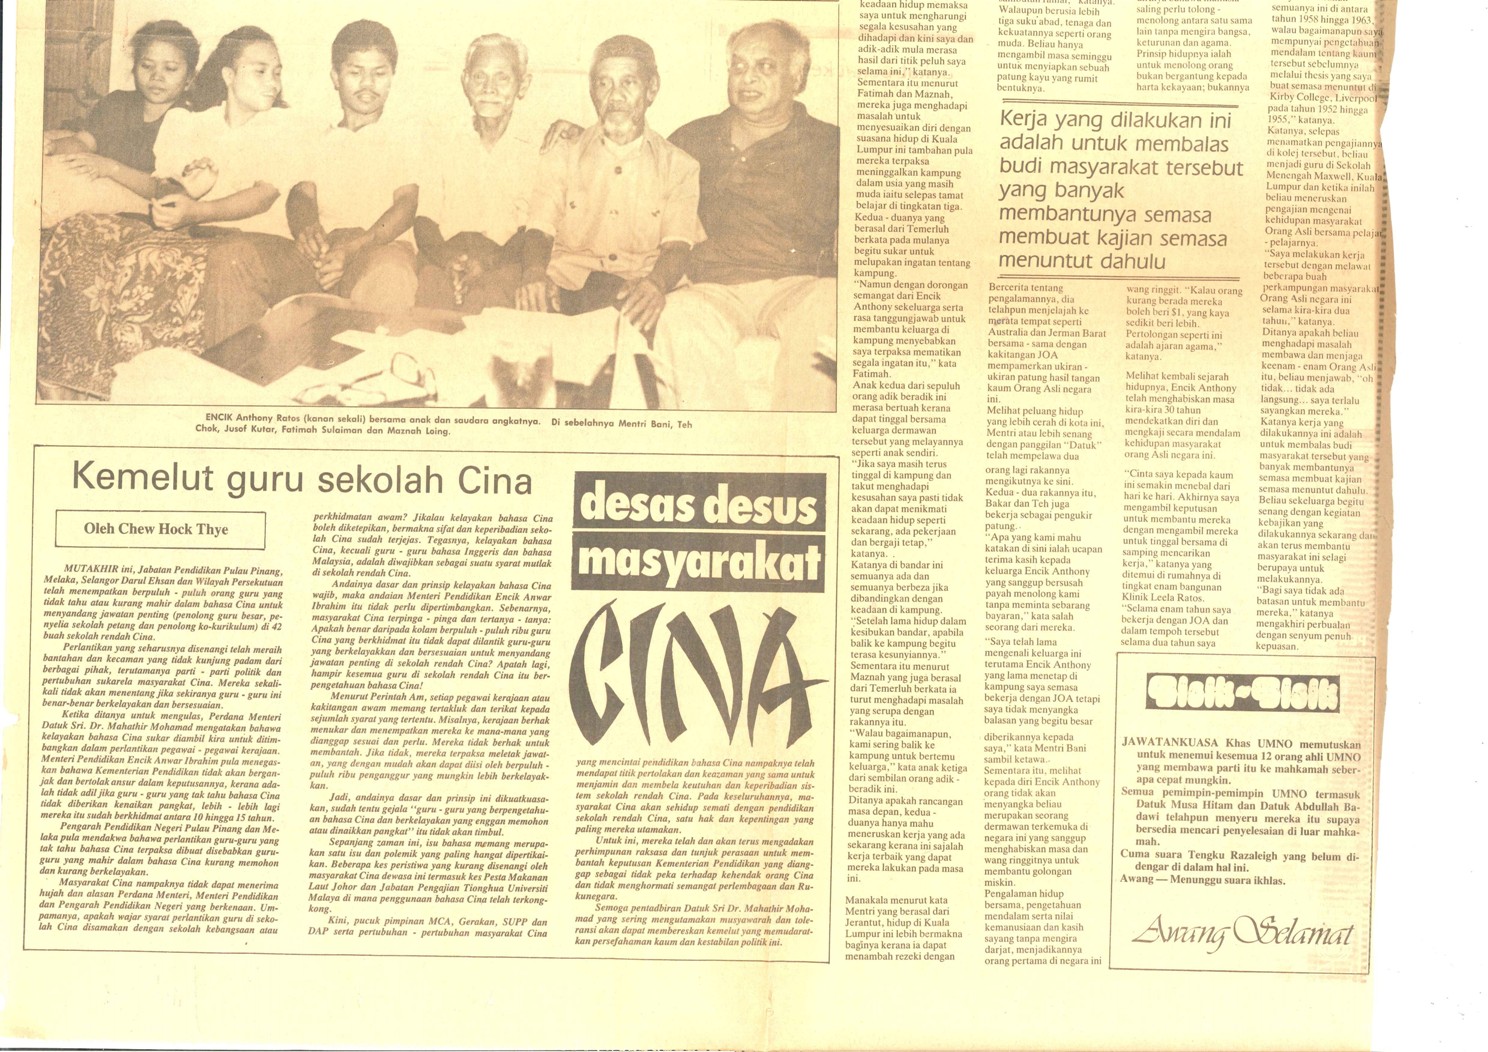 Utusan Malaysia, October 10, 1987